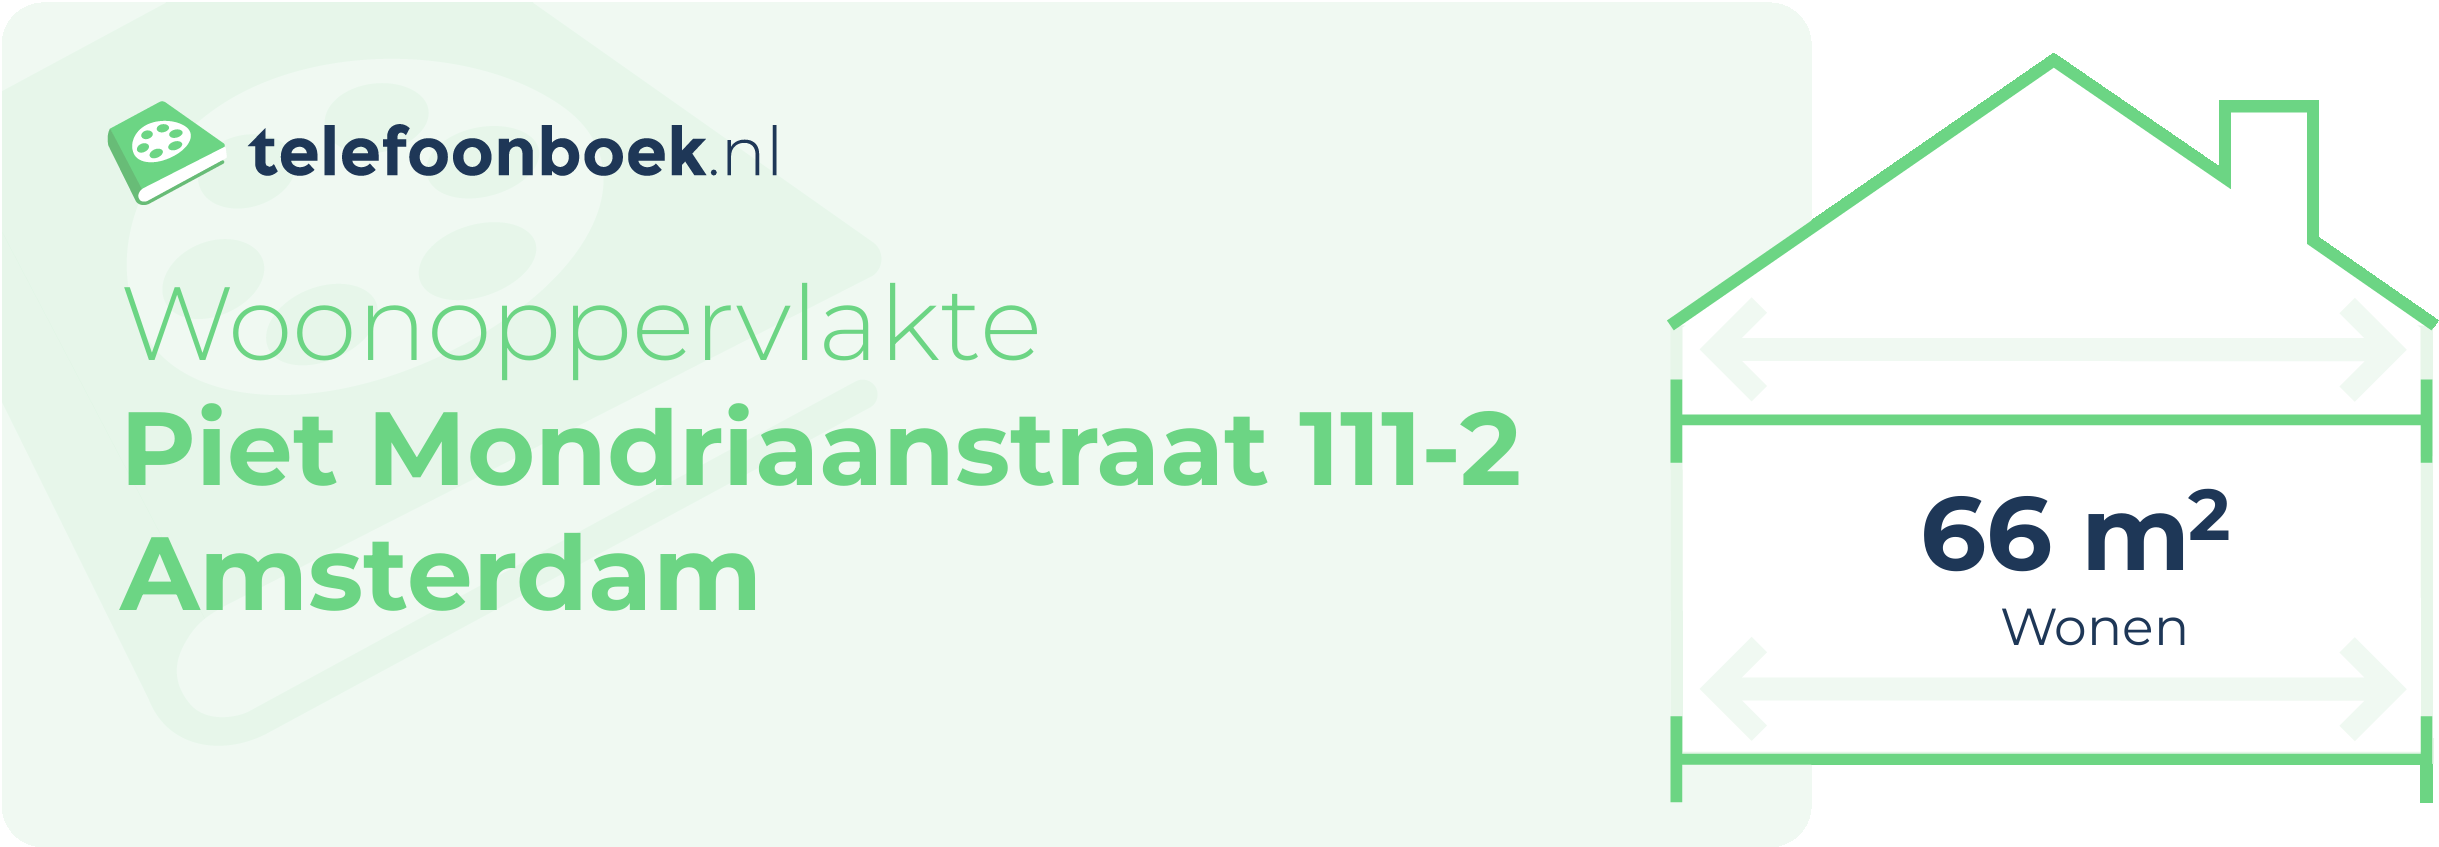 Woonoppervlakte Piet Mondriaanstraat 111-2 Amsterdam